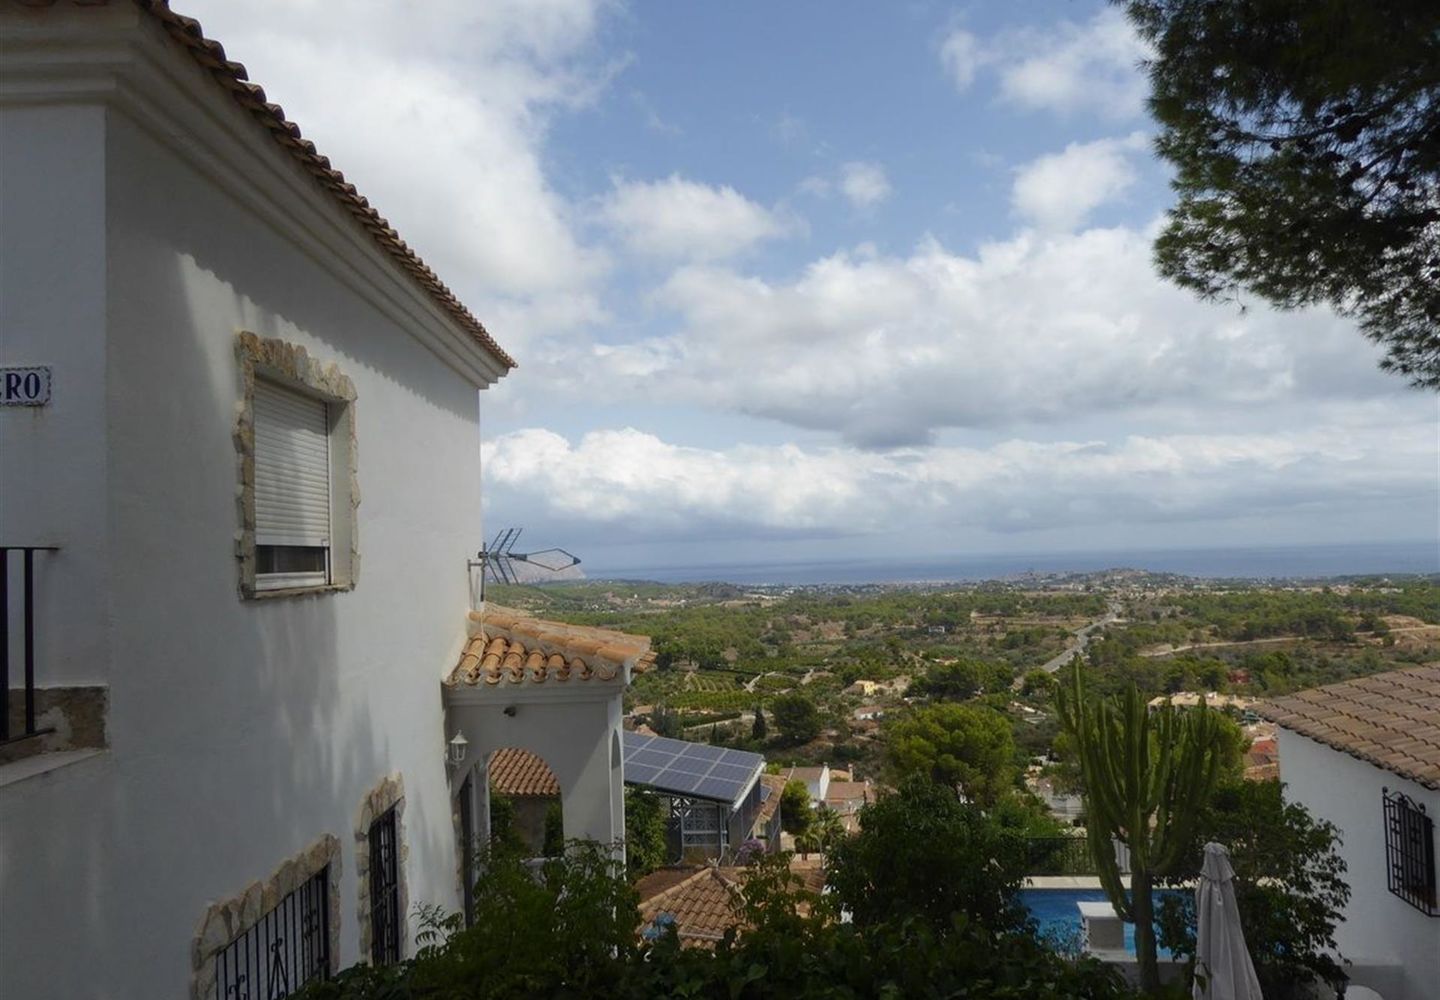 CASALINA ESPANA vous propose en vente une villa rénovée (2012) de 90 m² sur un terrain de 350 m² à La Nucia, Costa Blanca Nord, avec vue panoramique, connue pour sa magnifique centre du vieux village de La Nucia avec sa Plaza Mayor, l'église du 18è